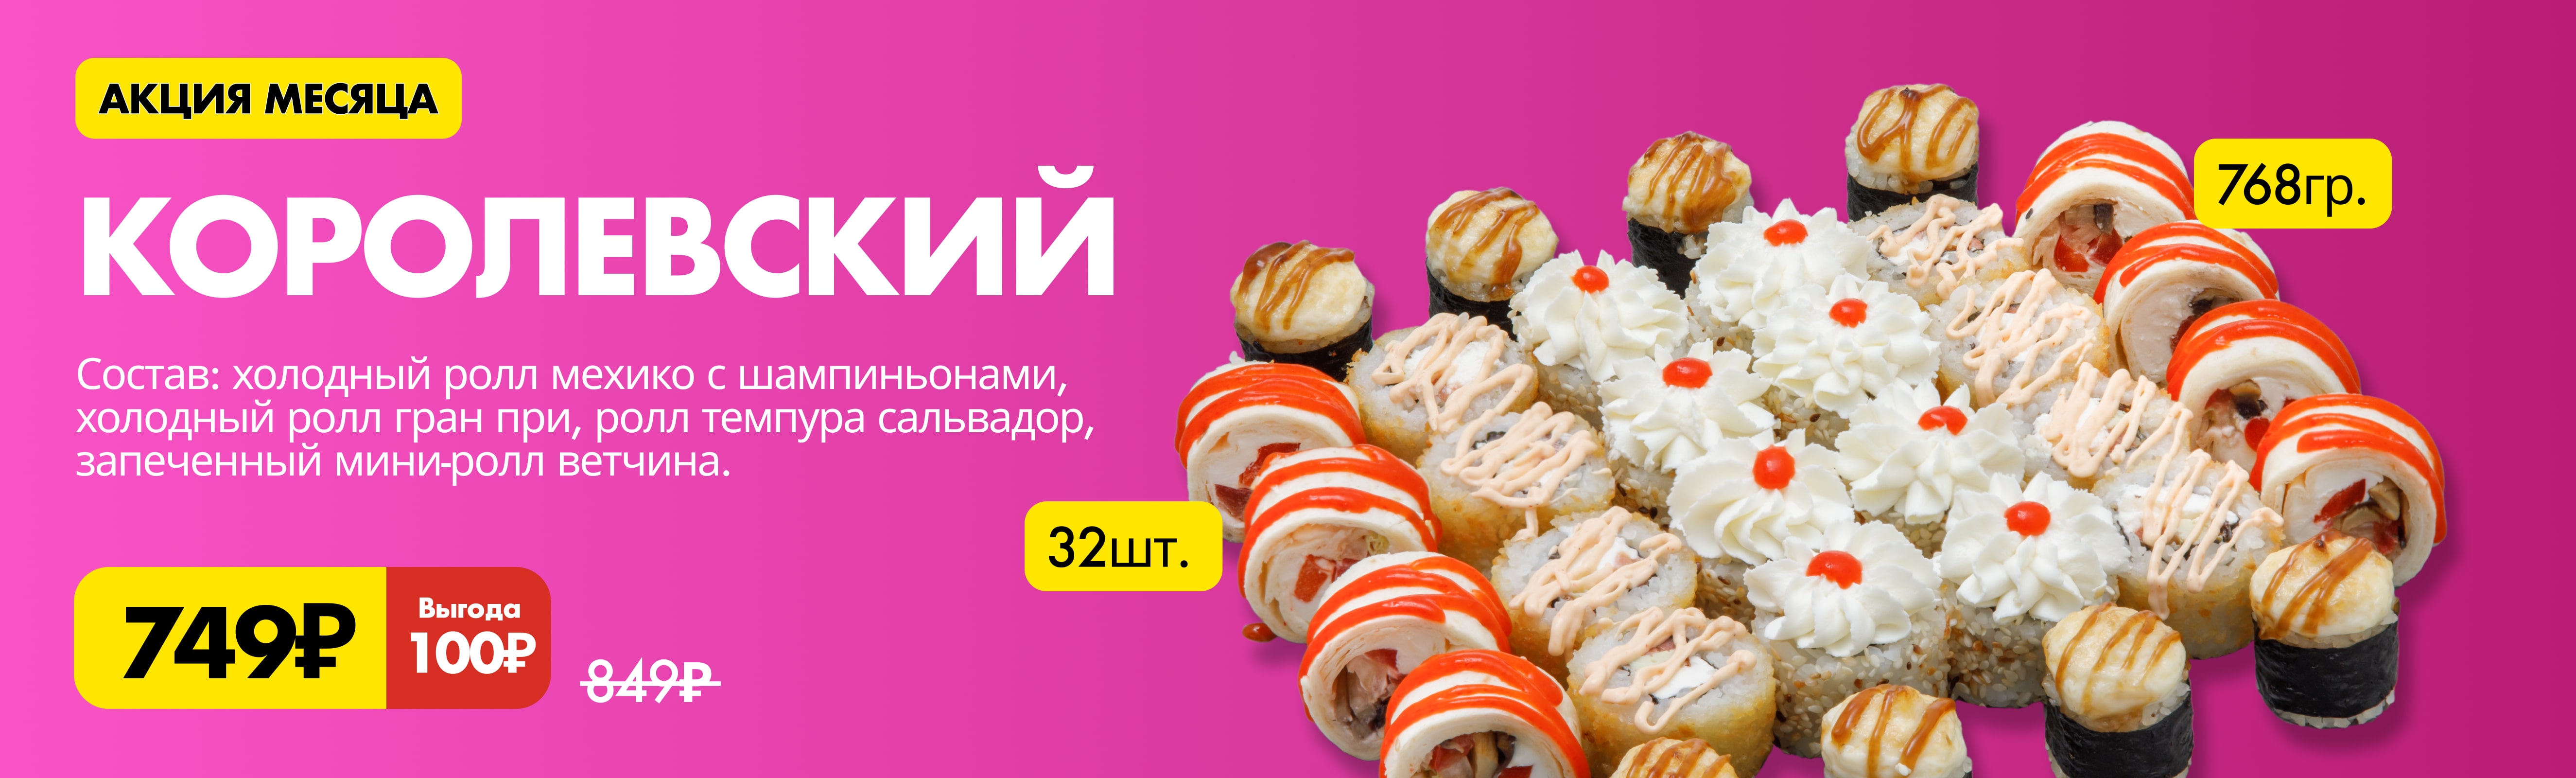 Роллы по акции от Pizzapan.ru